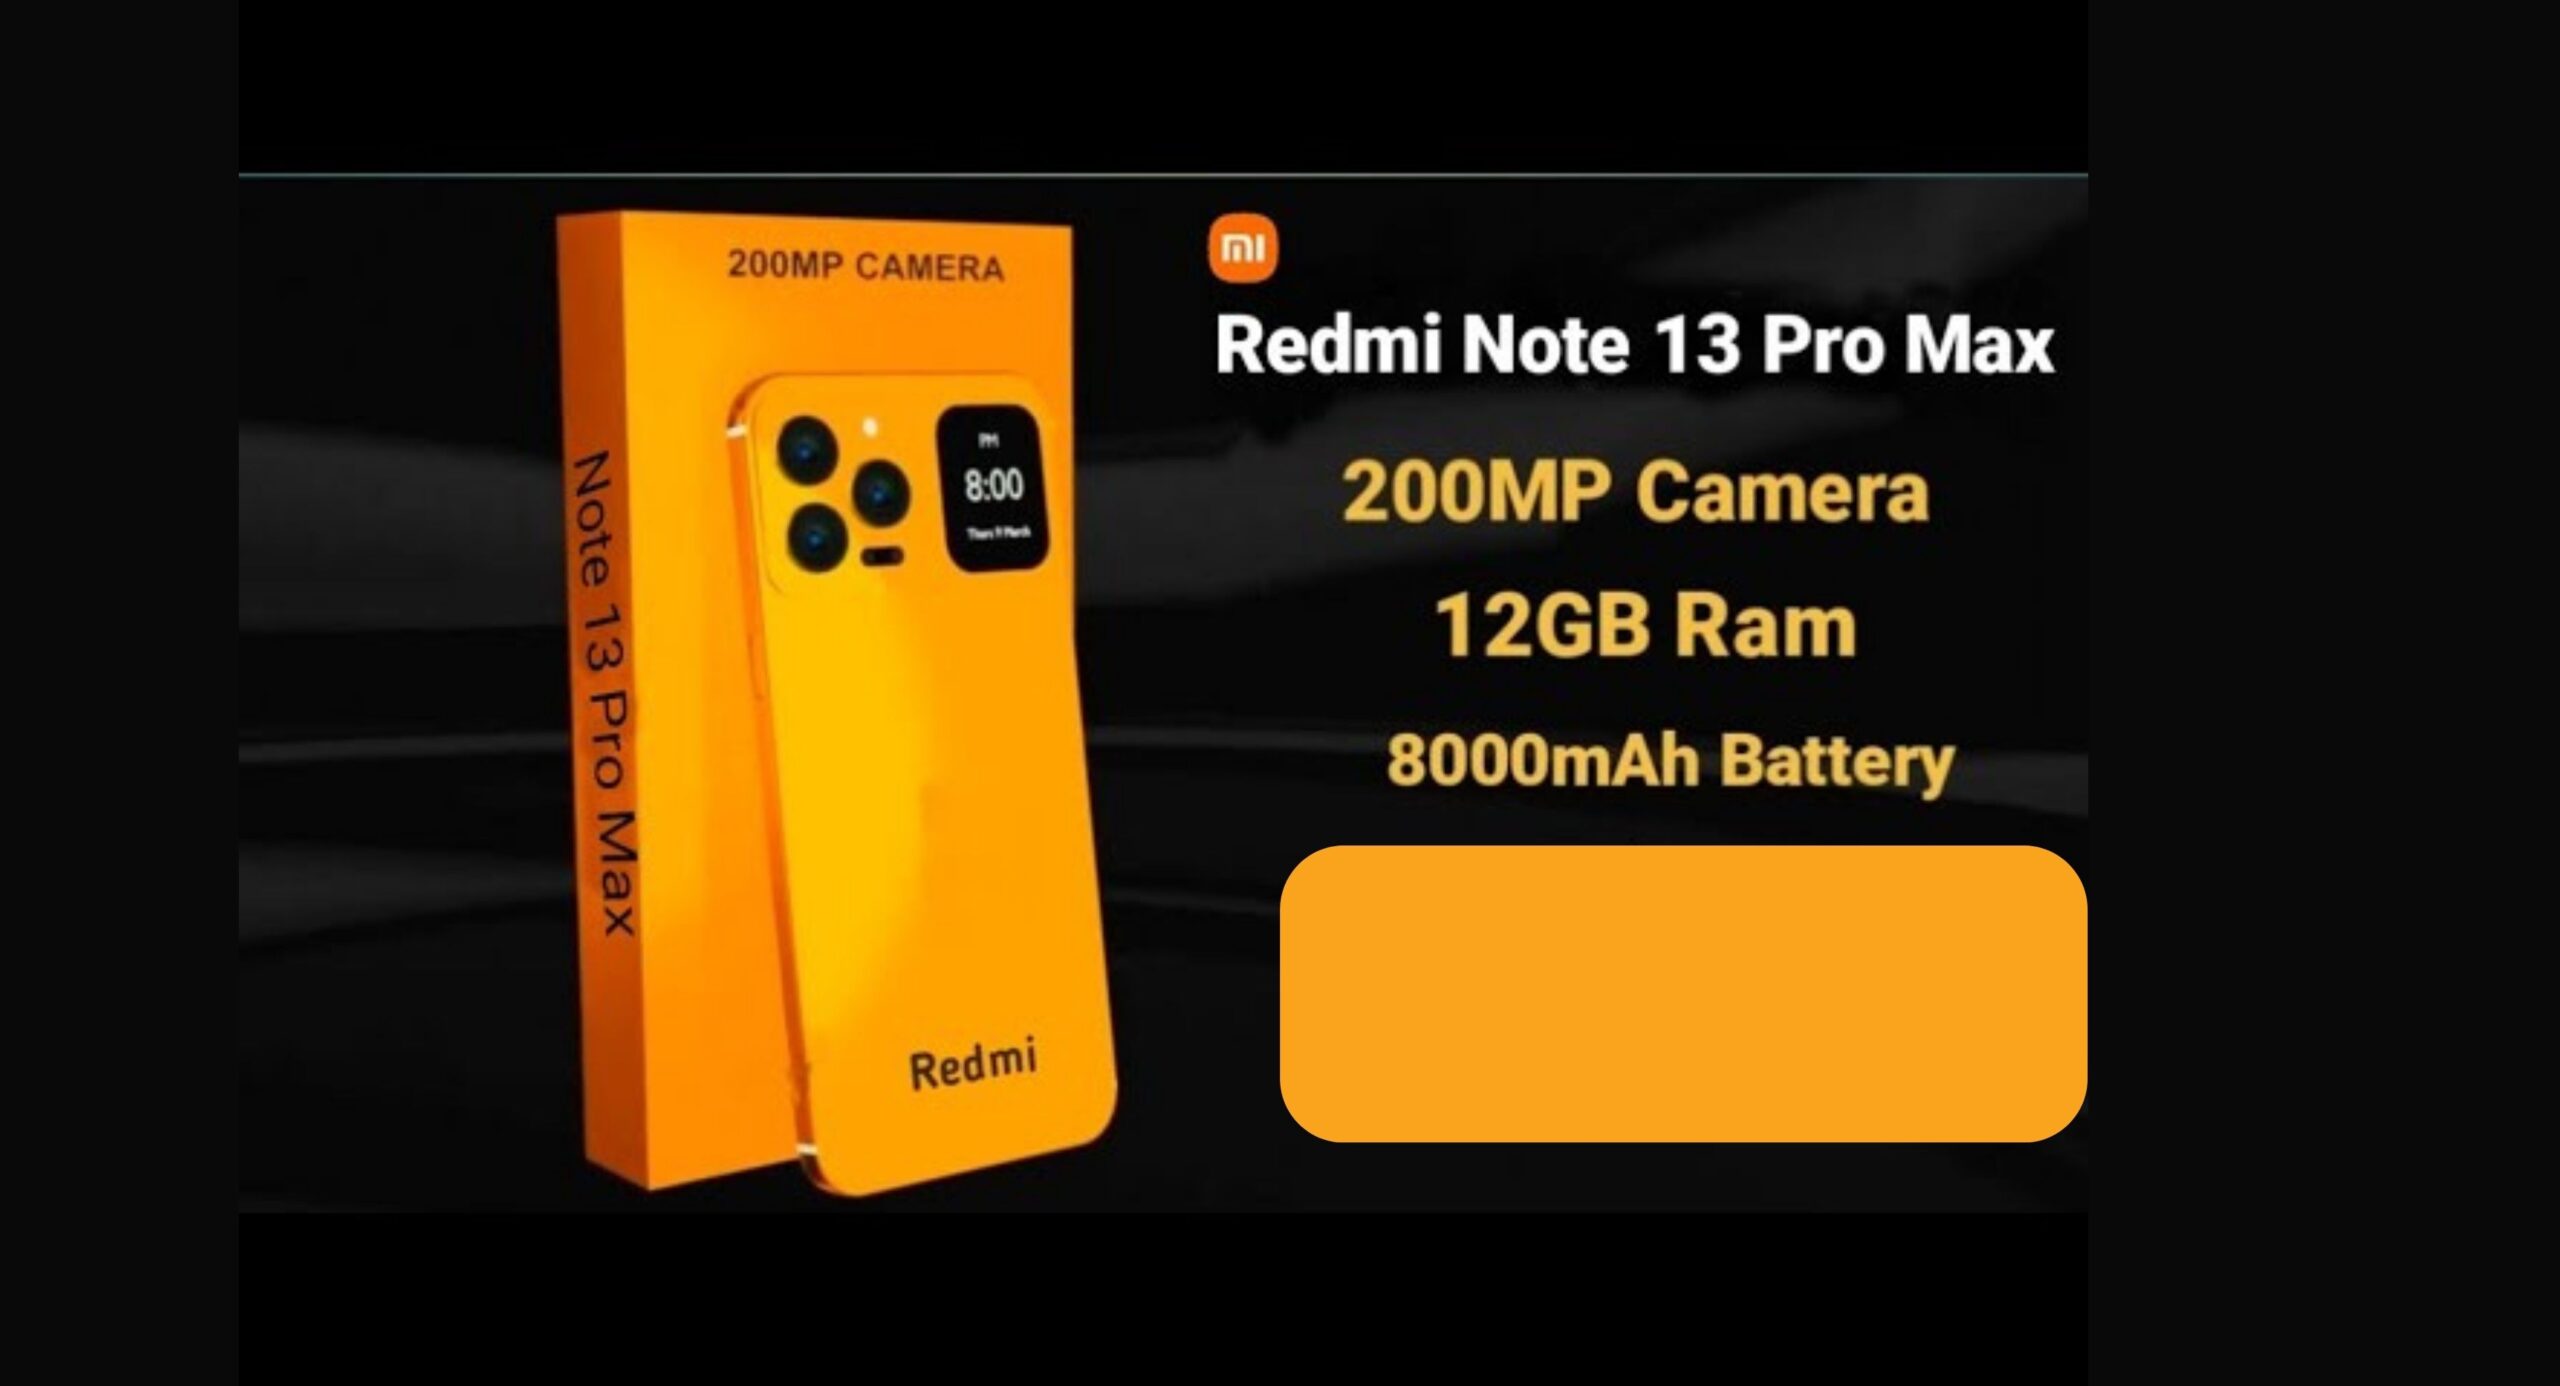 One Plus की भौजी याद दिलाता है Redmi का यह स्मार्टफोन, 200MP की कैमरा क्वालिटी में देखने को मिलते हैं यह फीचर्स